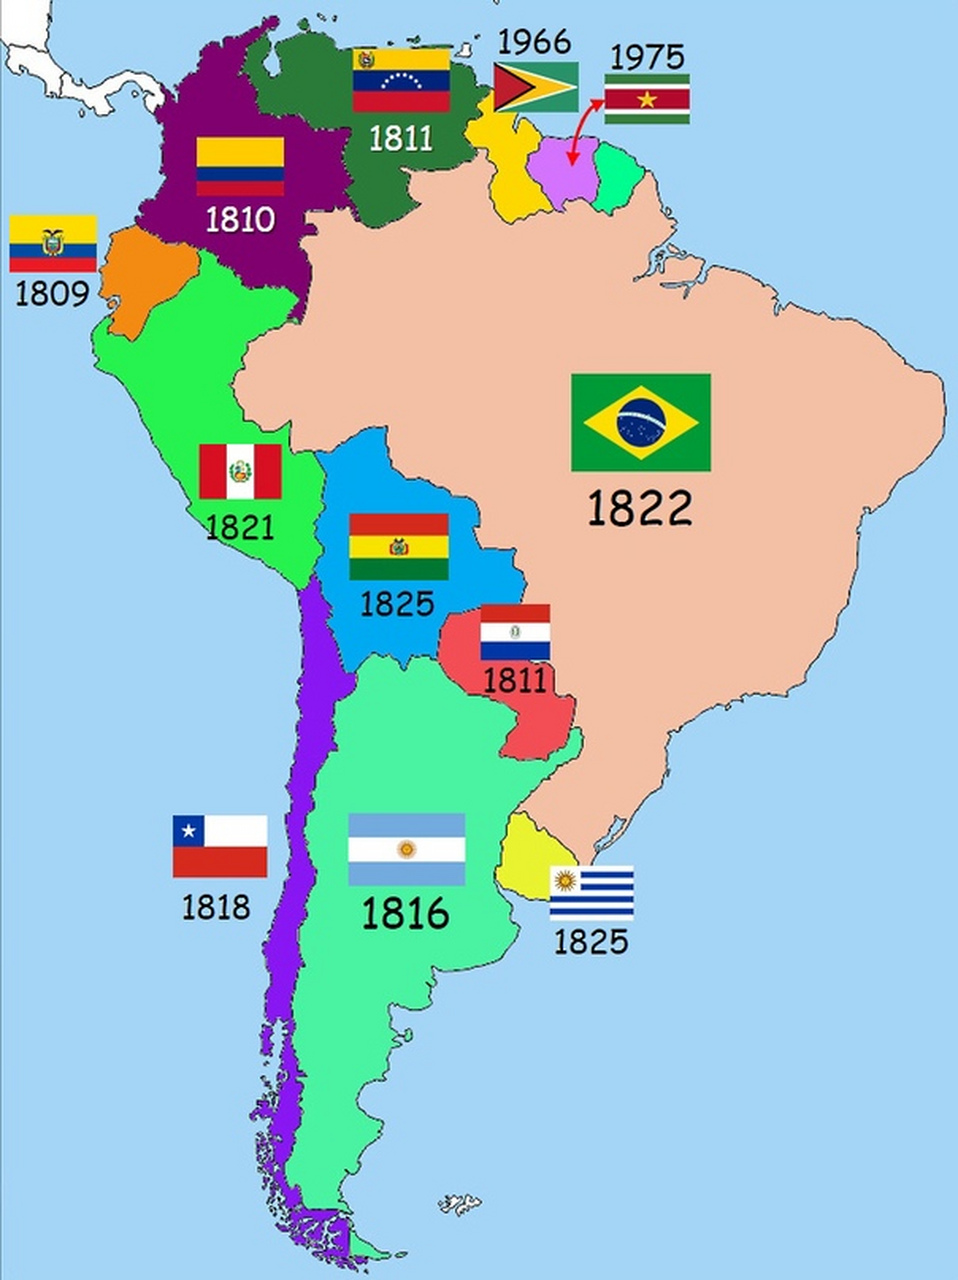 南美洲国家宣布独立的年代